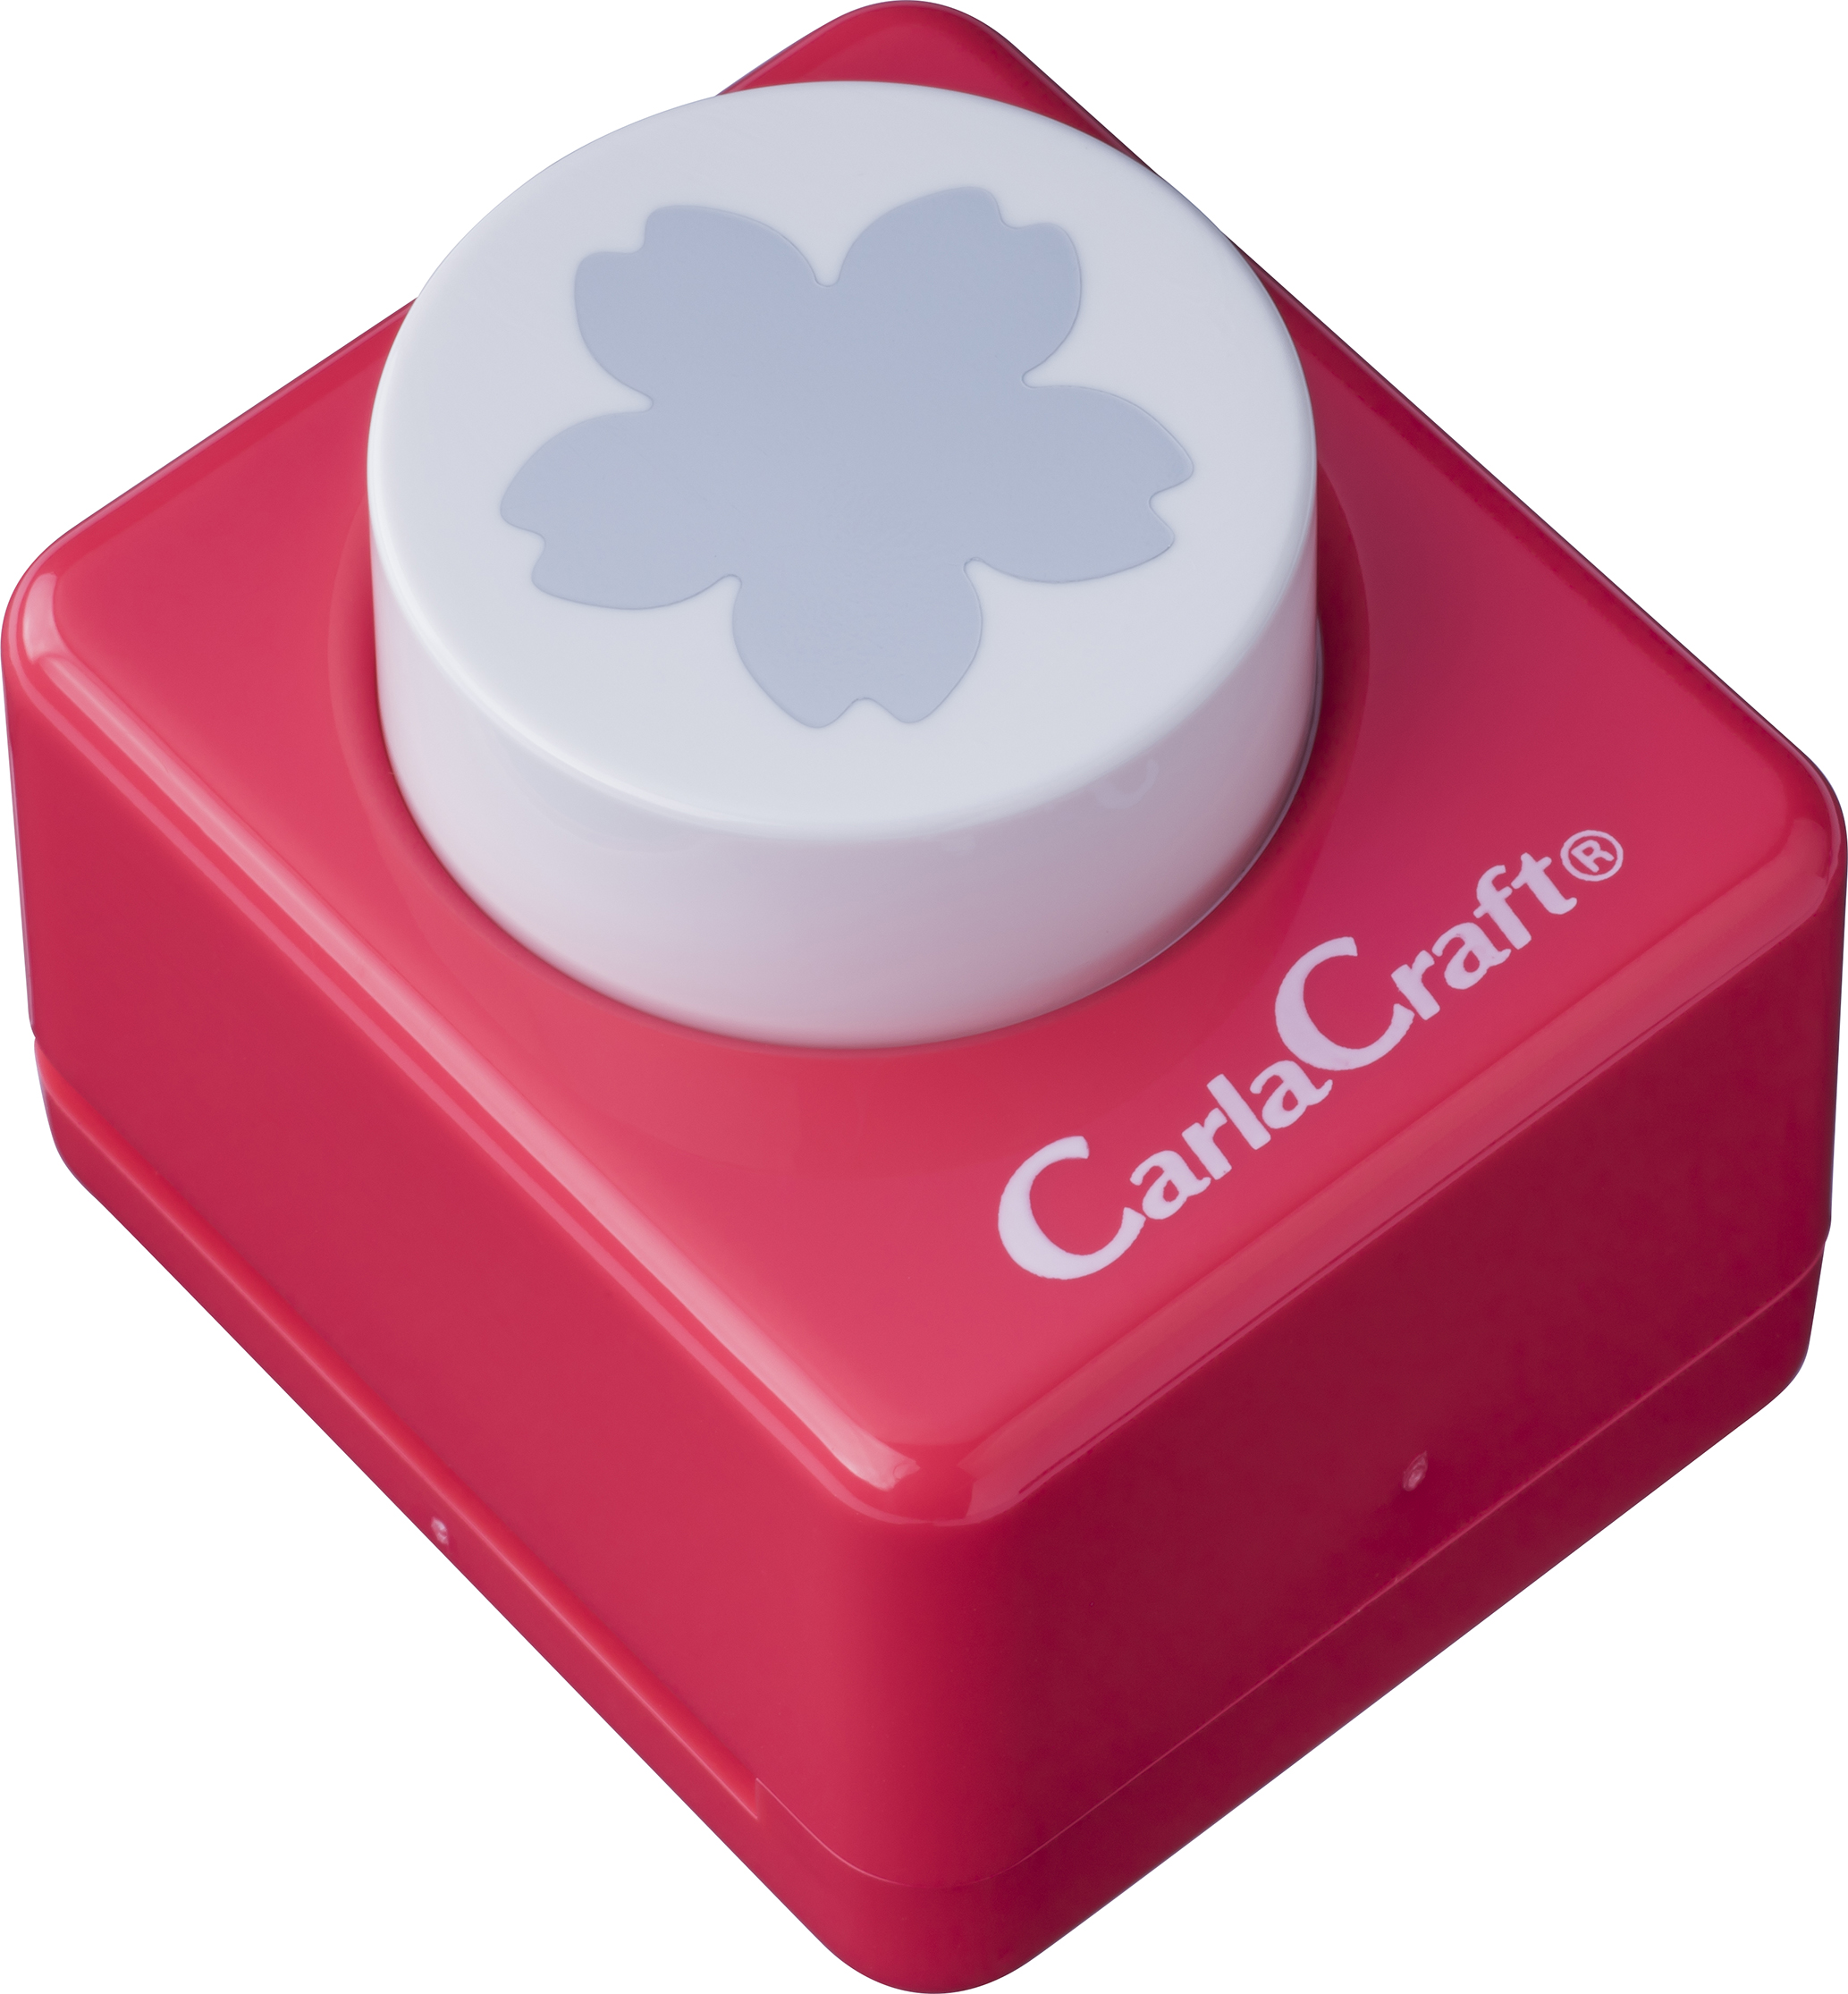 CP-2ｻｸﾗ カール事務器 クラフトパンチ サクラ CP-2 カール事務器 4971760144739